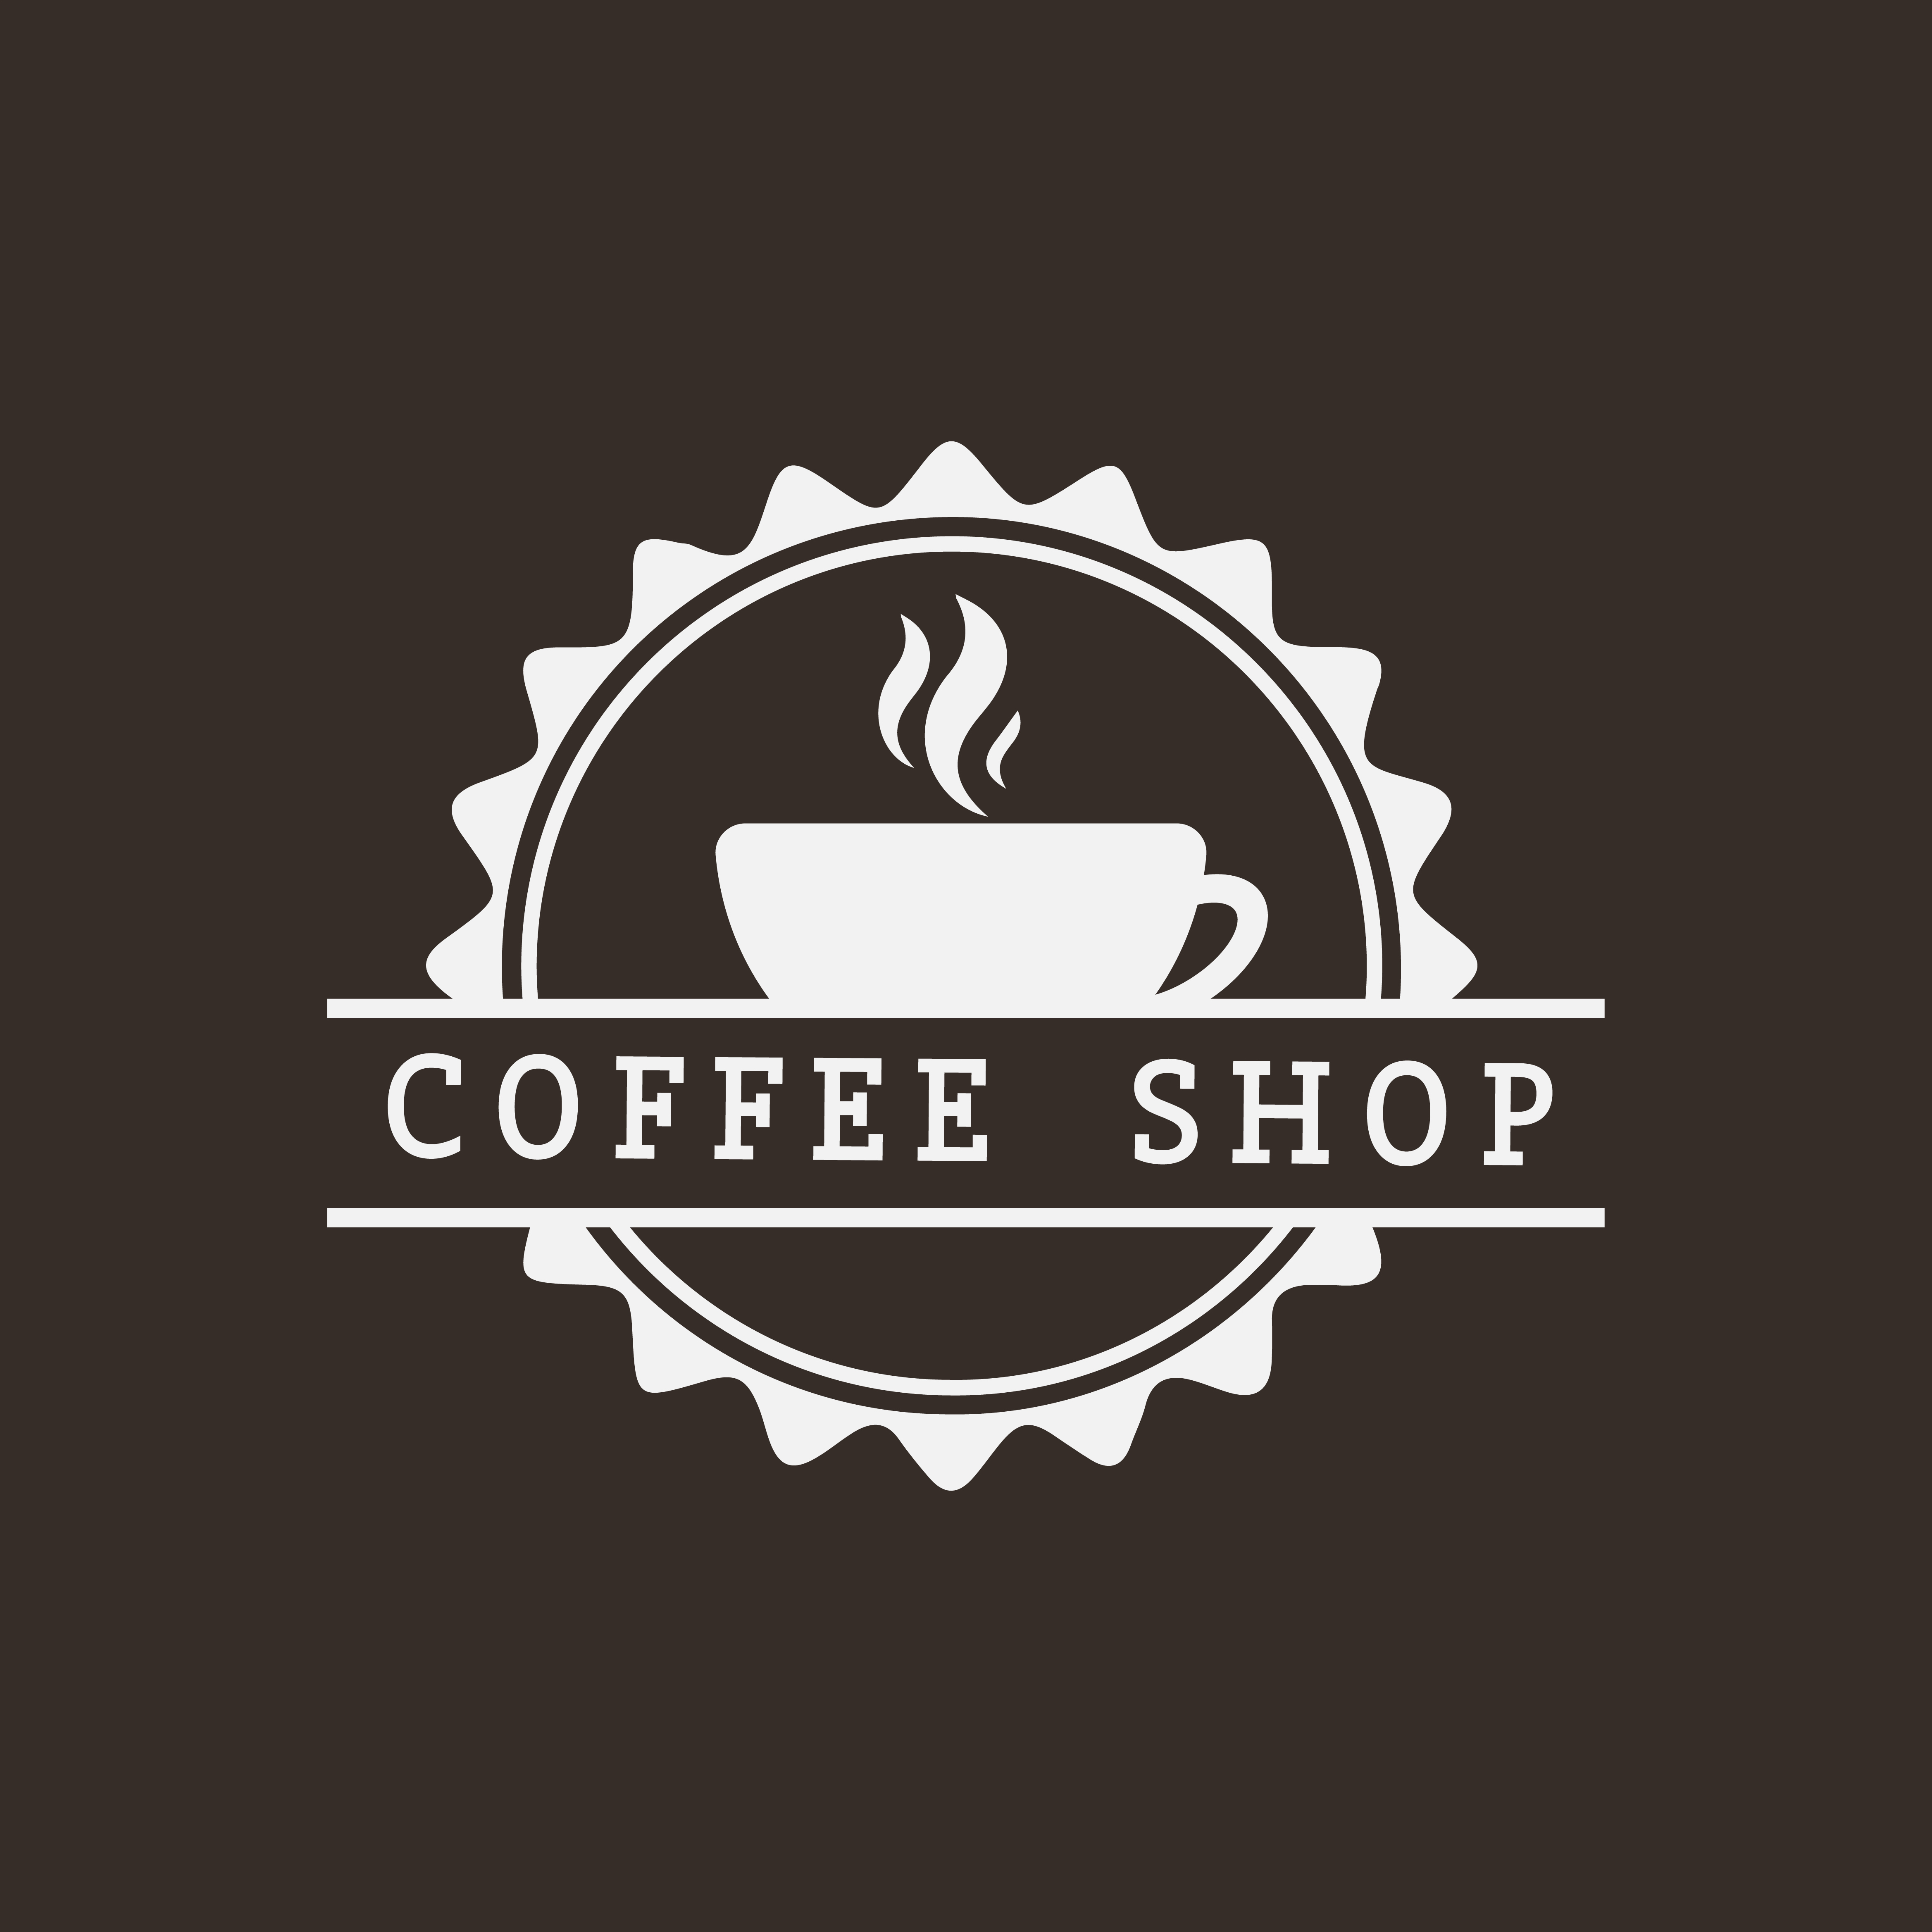 Download Retro coffee shop logo vector - Download Free Vectors ...